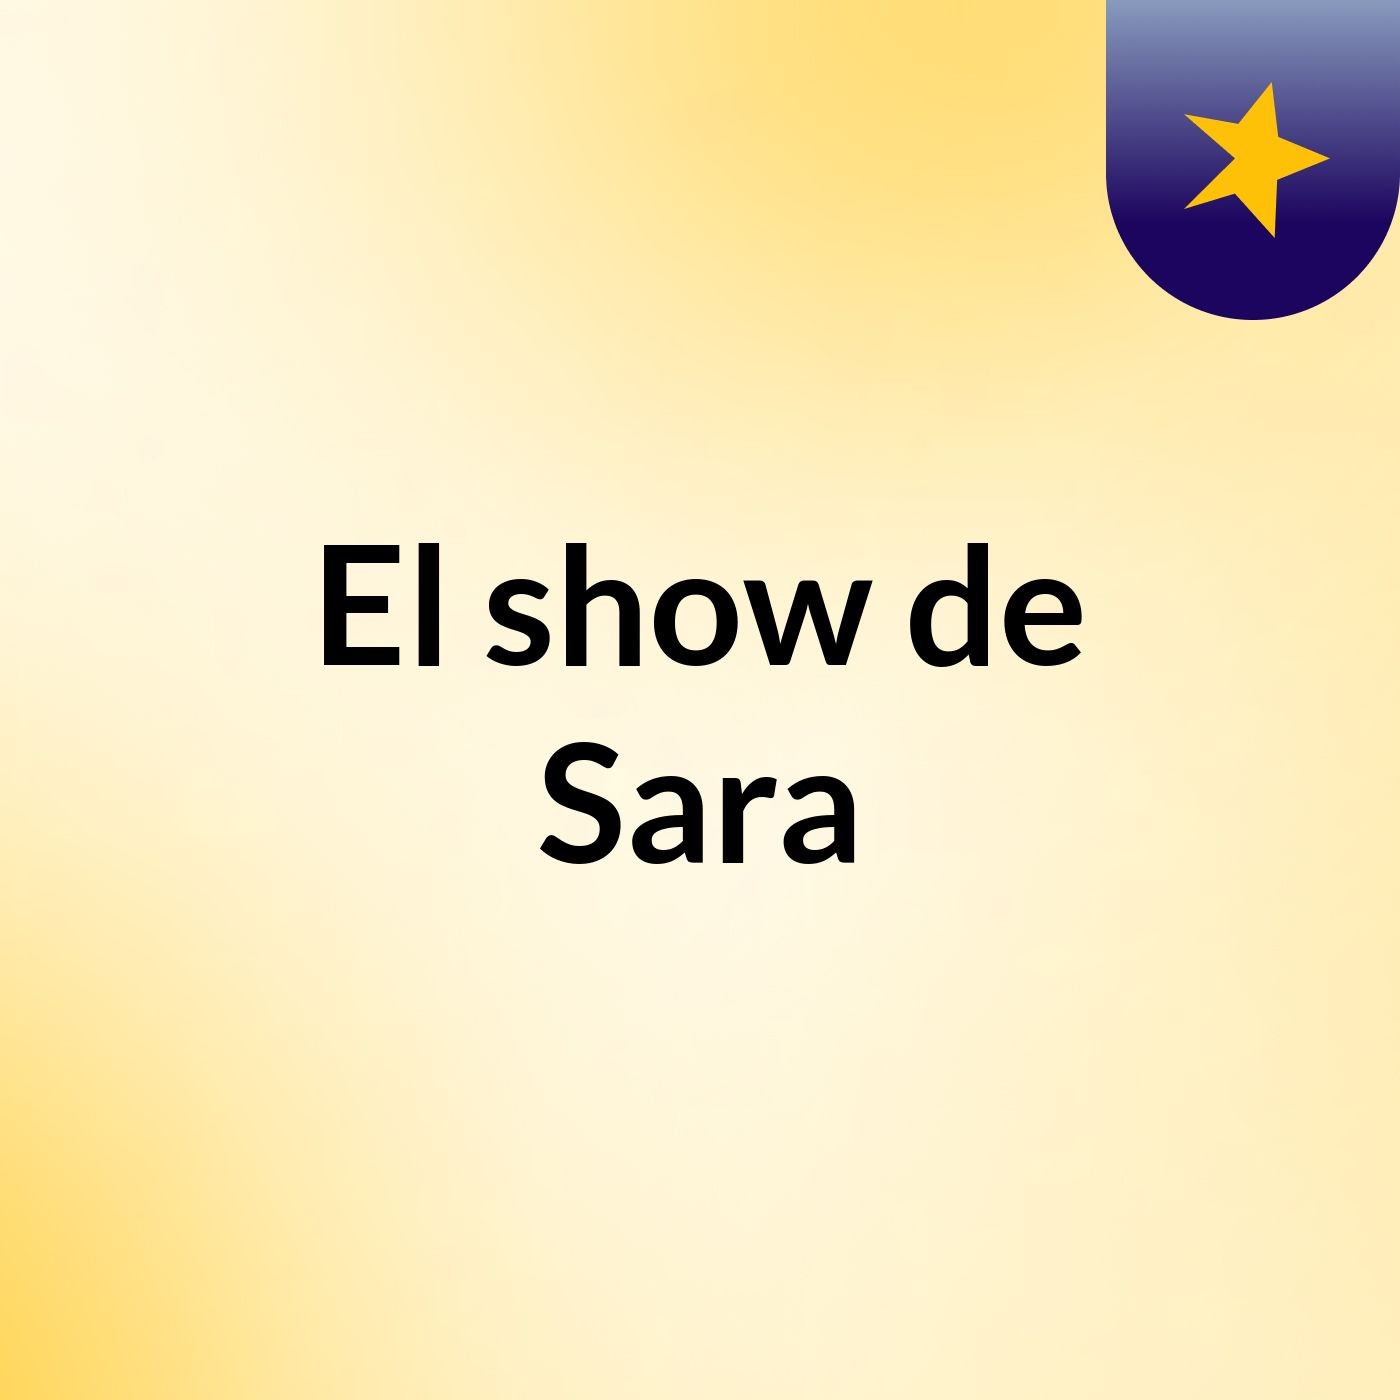 El show de Sara